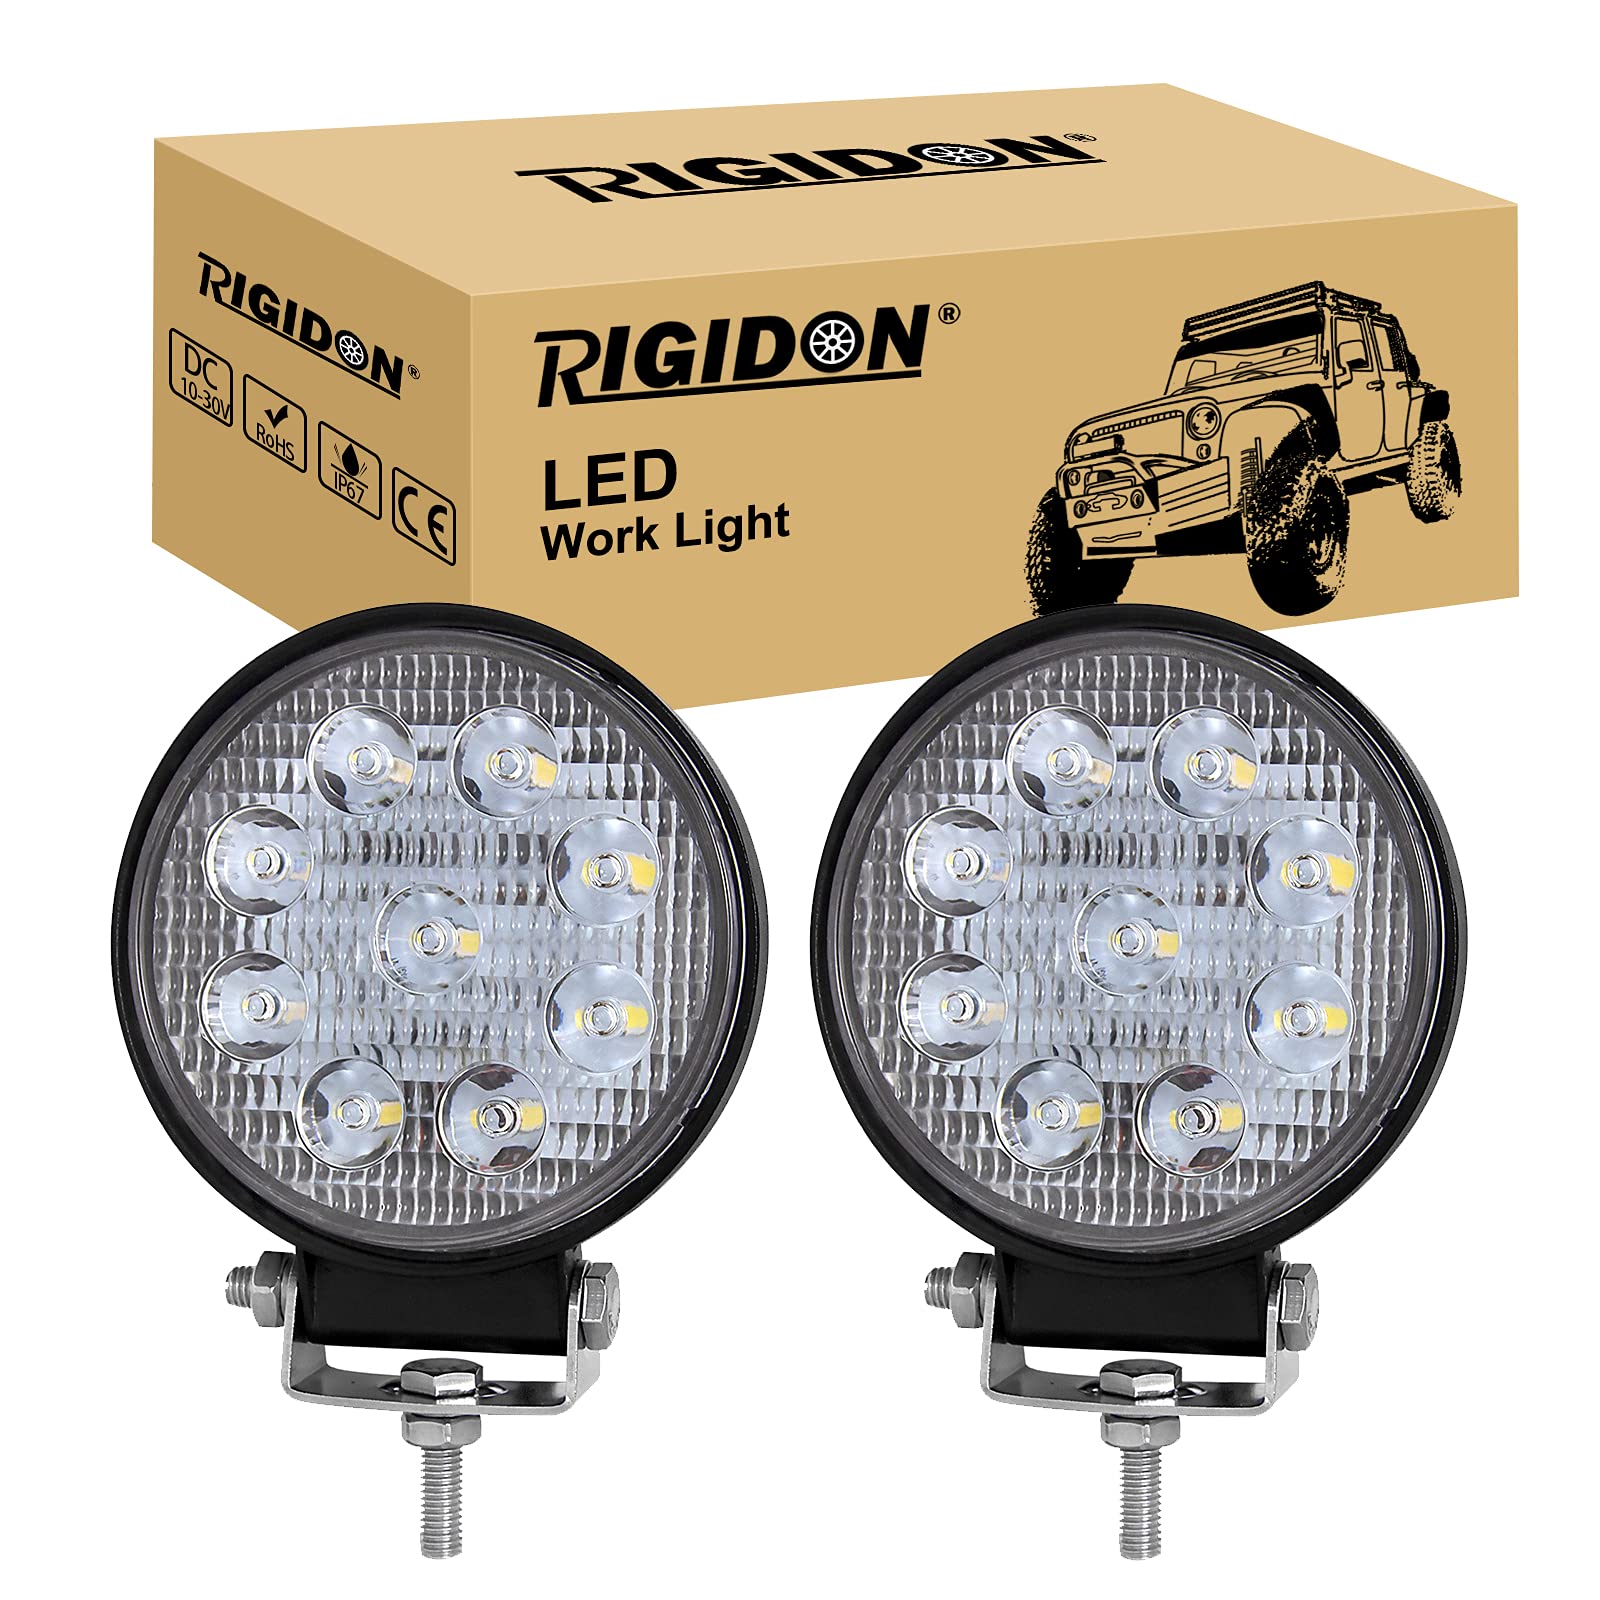 RIGIDON 2 Pcs Auto rund scheinwerfer, 4 Zoll 10cm 27W Spot Strahler offroad beleuchtung für Auto SUV ATV, Traktor, LKW, 4x4, 6000K led nebelscheinwerfer, led arbeitsscheinwerfer, led arbeitslicht von RIGIDON